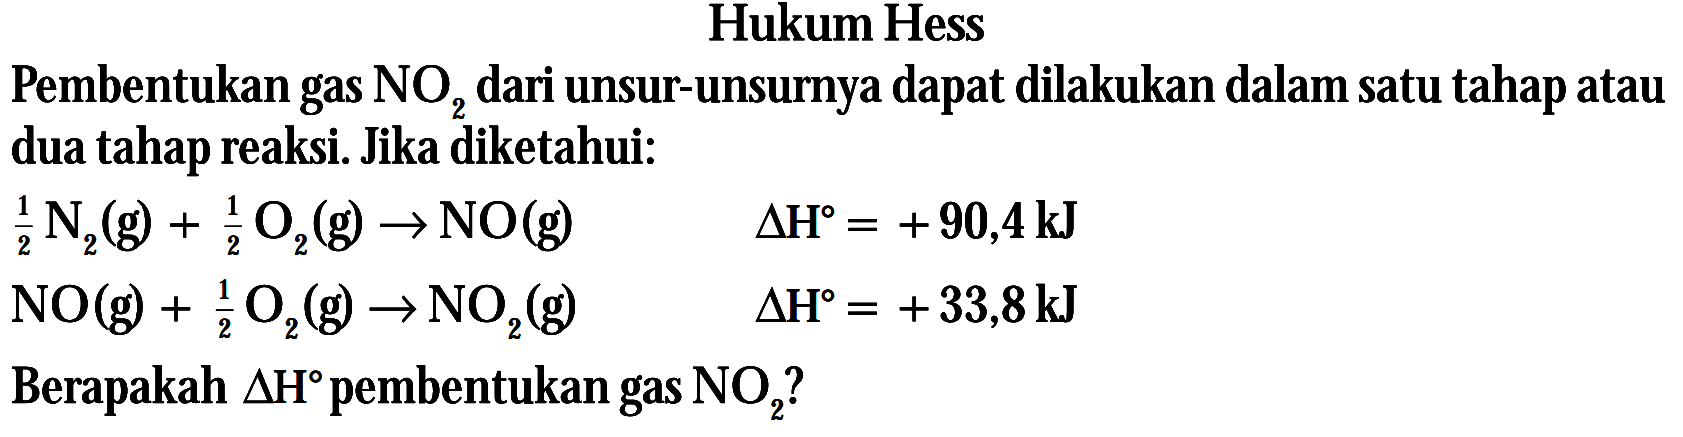 Hukum Hess Pembentukan gas NO2 dari unsur-unsurnya dapat dilakukan dalam satu tahap atau dua tahap reaksi. Jika diketahui: (1/2)N2 (g) + (1/2)O2(g) -> NO(g) delta H = +90,4 kJ NO(g) + (1/2) O2(g) -> NO2 (g) delta H = +33,8 kJ Berapakah delta H pembentukan gas NO2?